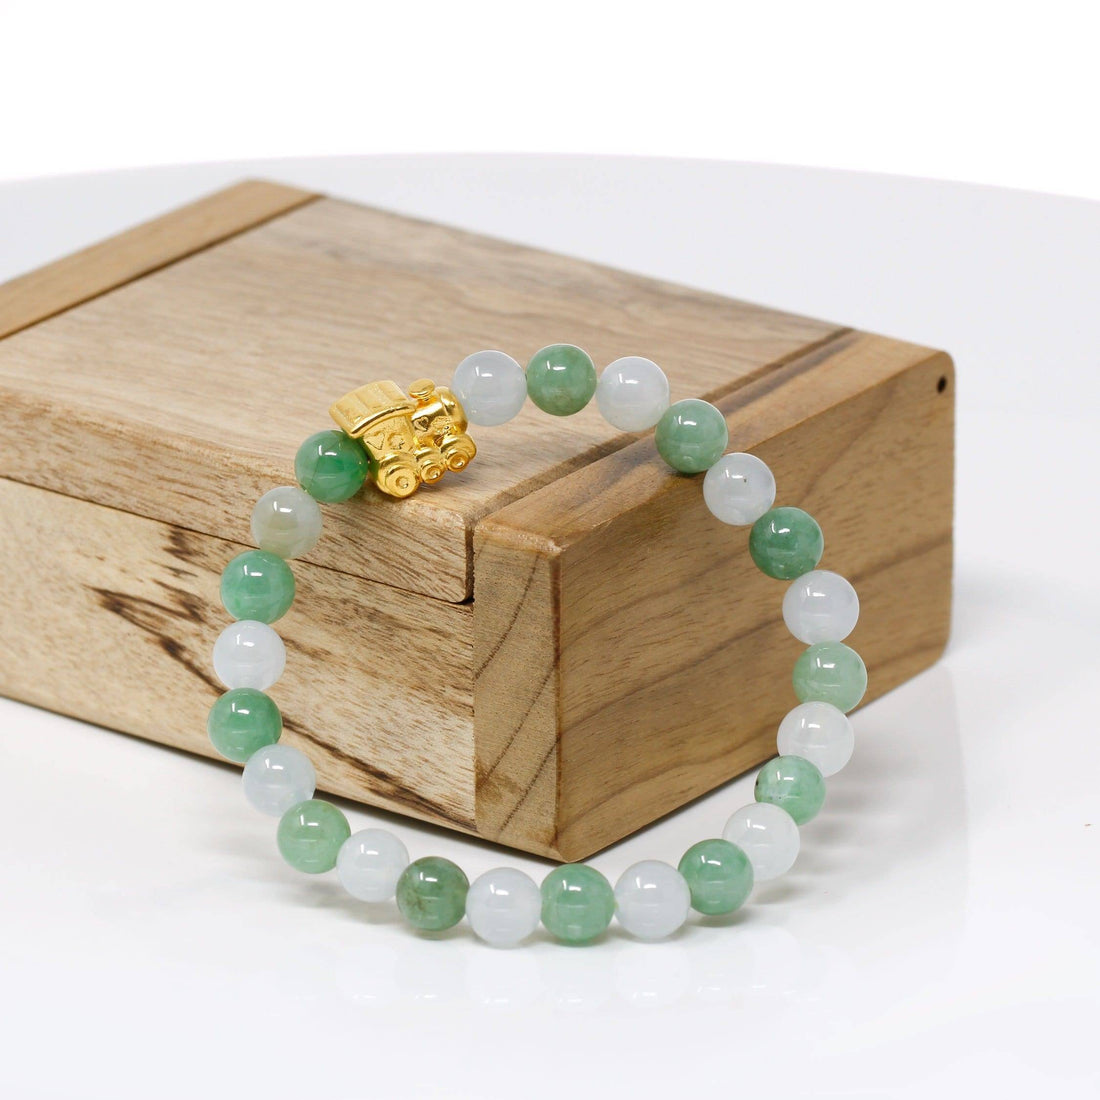 Baikalla Jewelry 24k Gold Jadeite Beads Bracelet Genuine High-quality Jade Jadeite Bracelet Bangle with 24k Yellow Gold Train Engine Charm #424